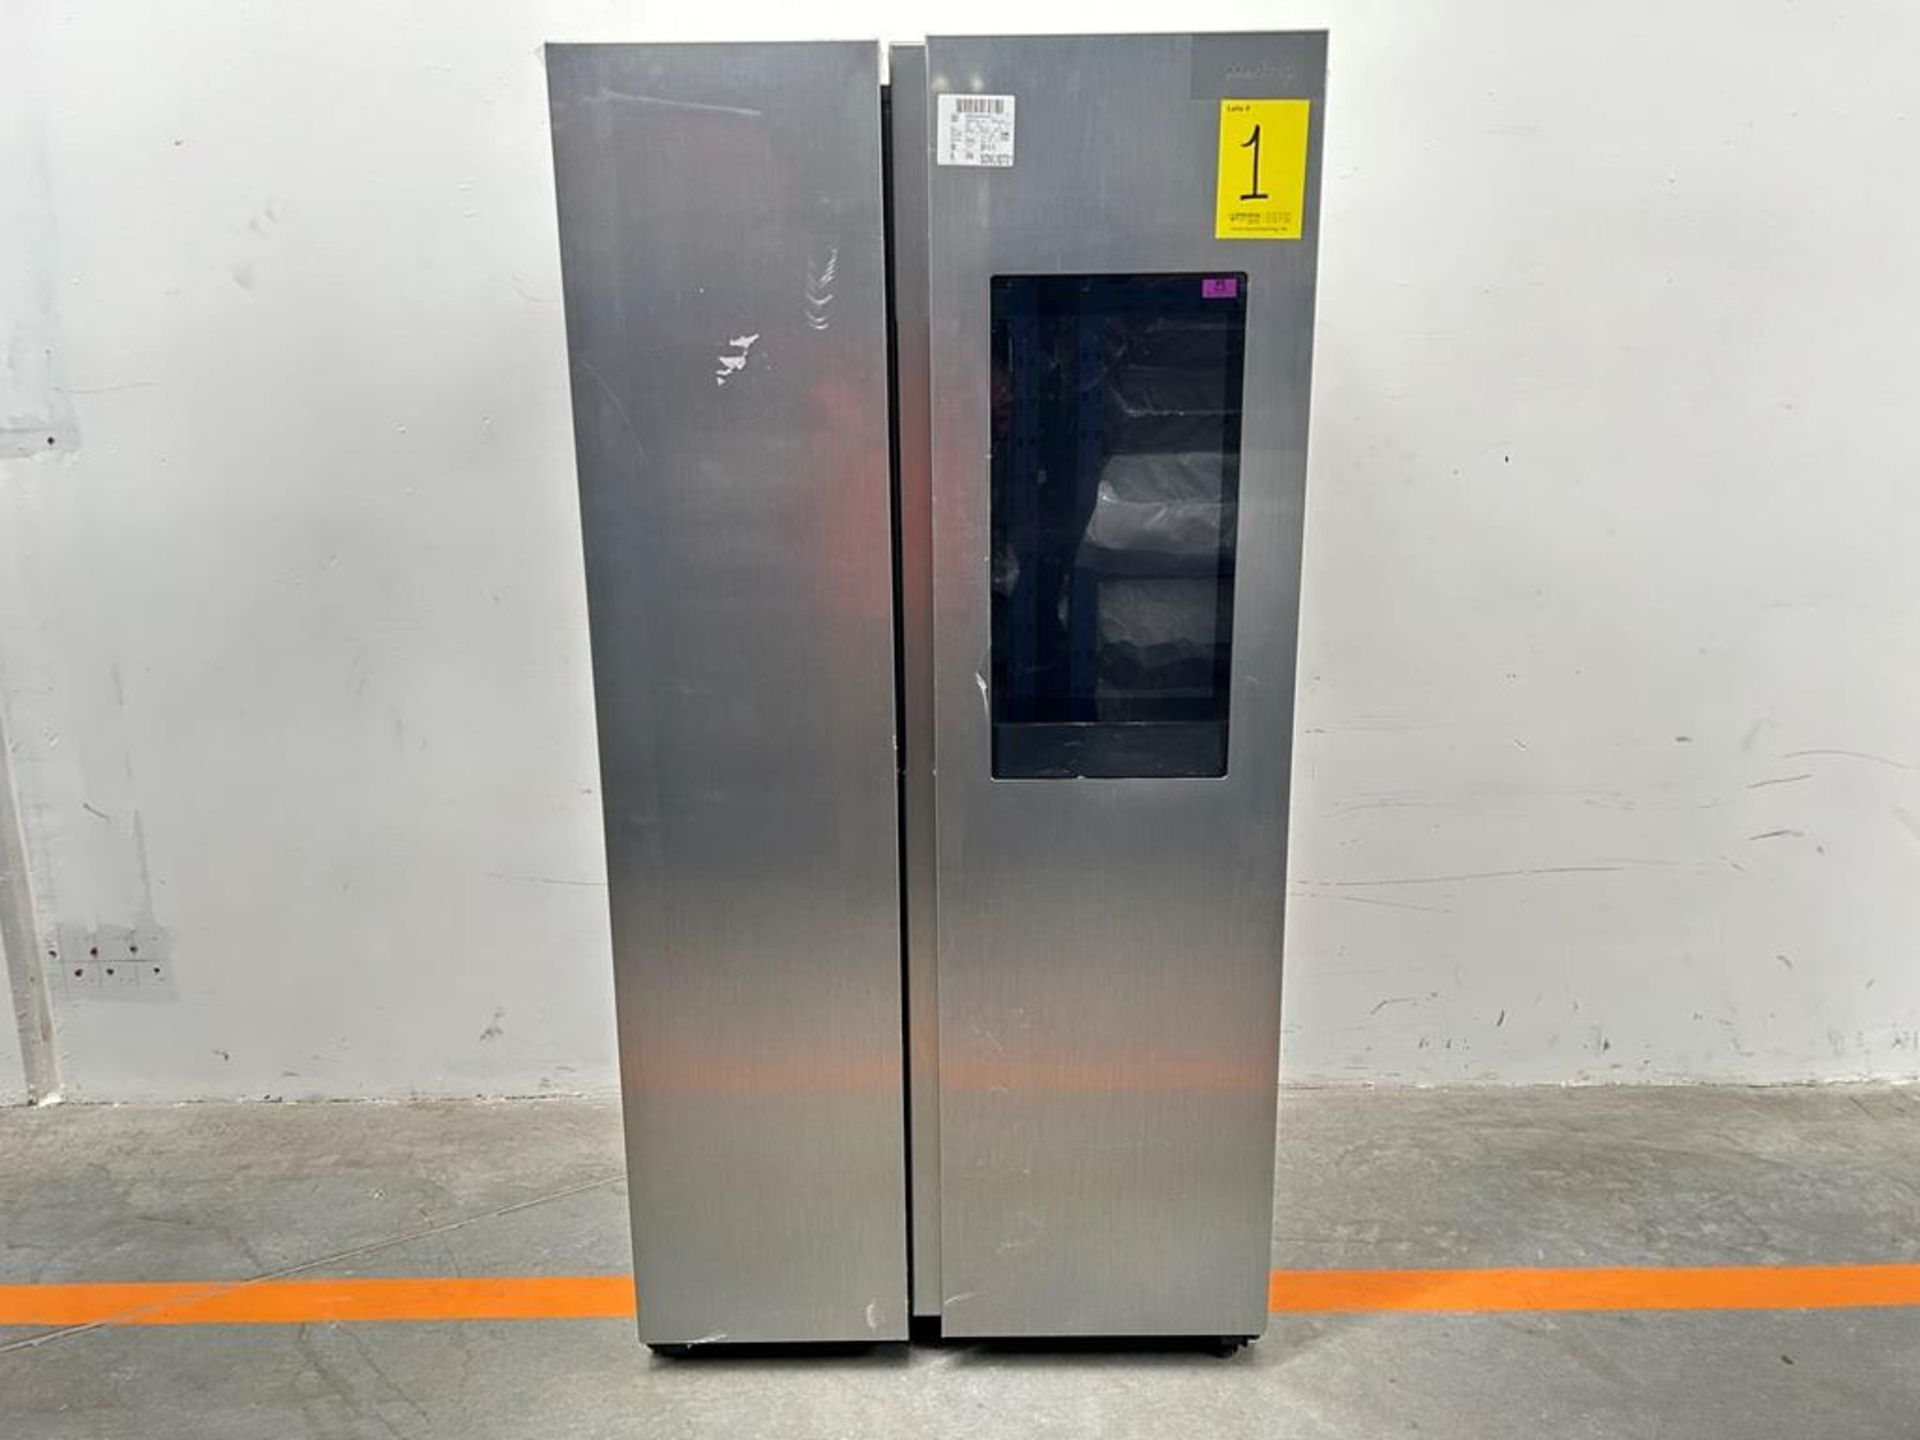 (NUEVO) Refrigerador Marca SAMSUNG, Modelo RS28A5F61S9, Serie 000015V, Color GRIS - Image 2 of 10